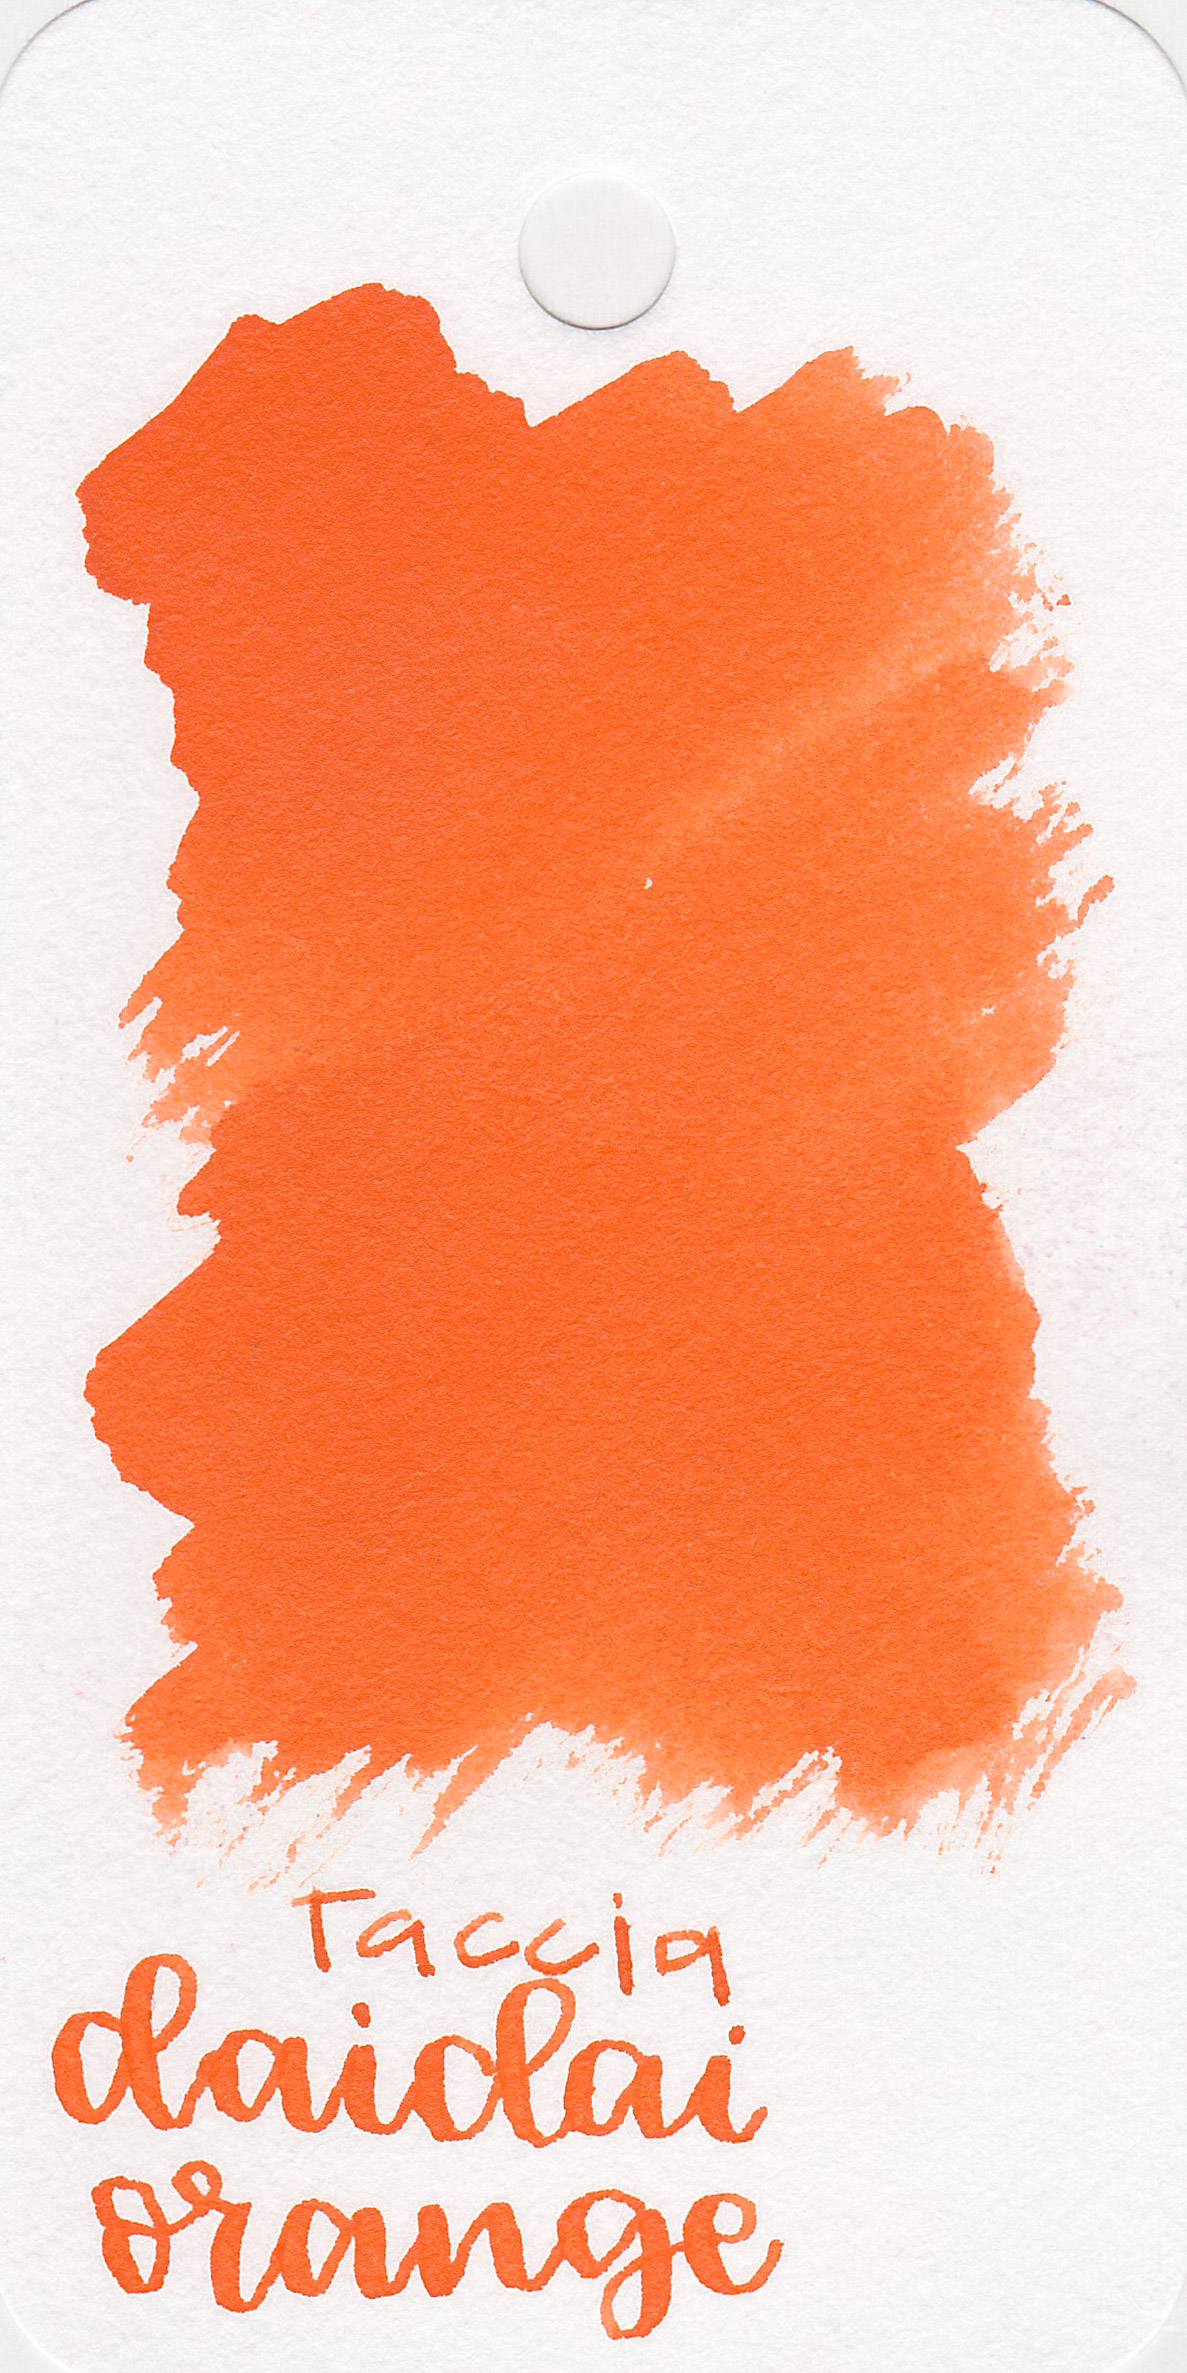 tac-daida-orange-1.jpg